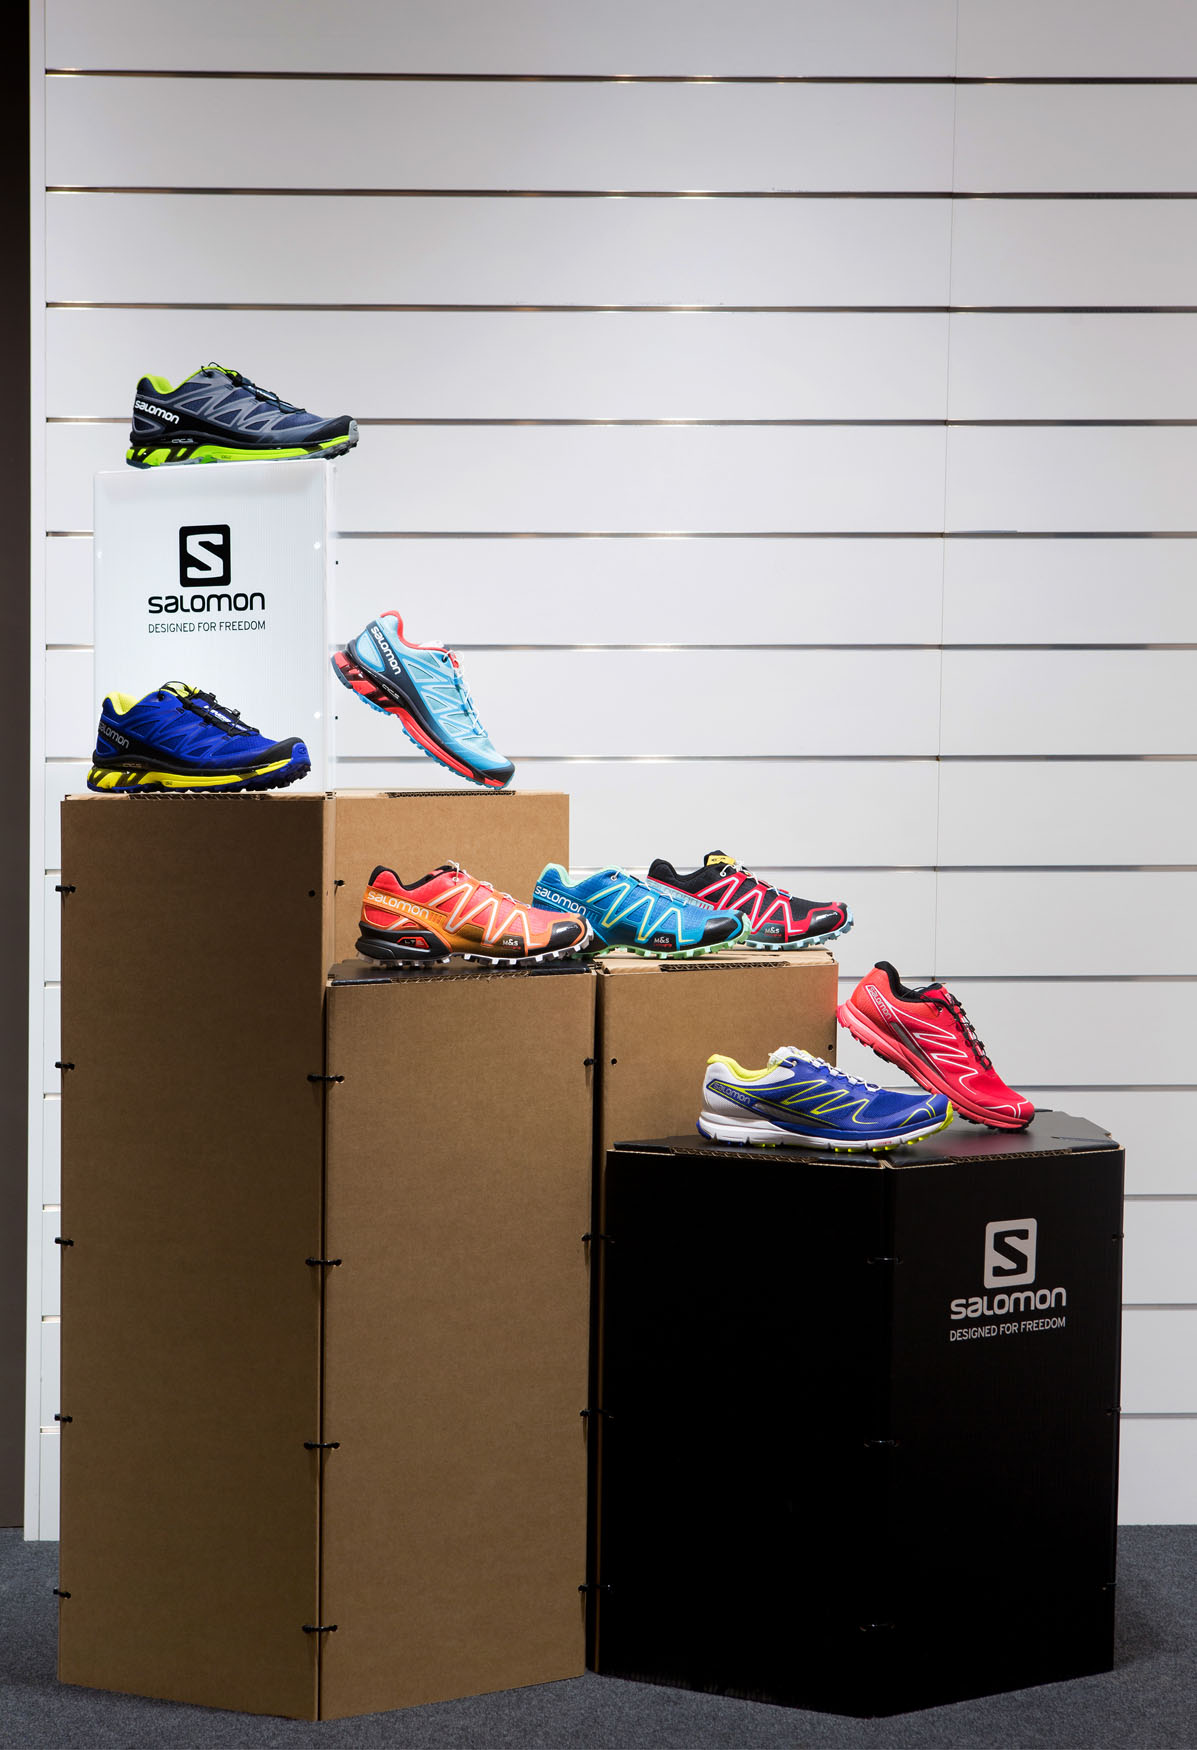 Corner expositivo para calzado de Salomon showroom Barcelona Ammer Sports Triplo* Sistema constructivo en cartón